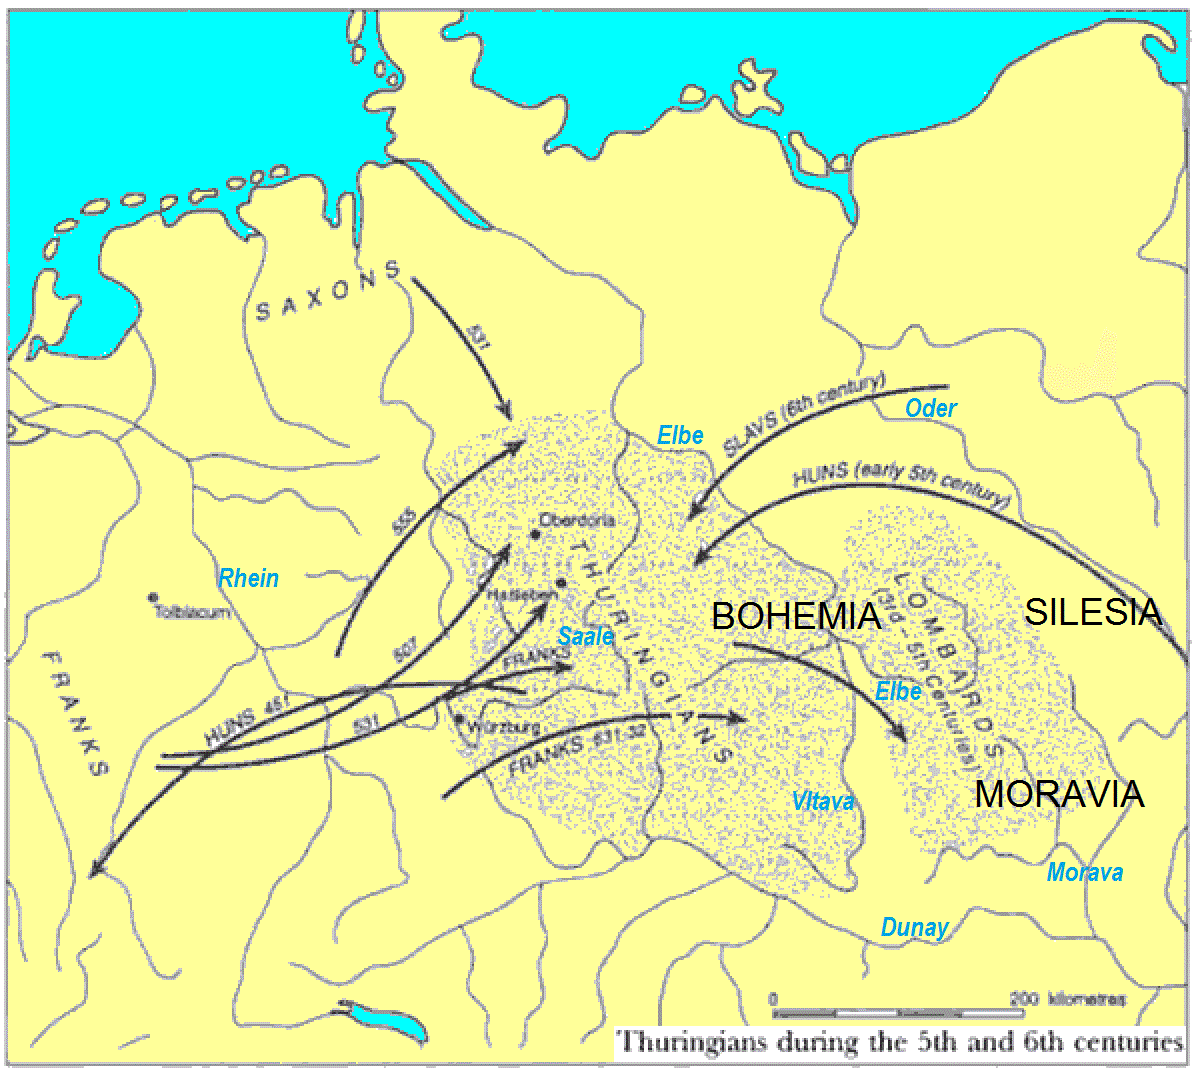 Тюрингия 5-6 века, возникшая на освободившихся землях